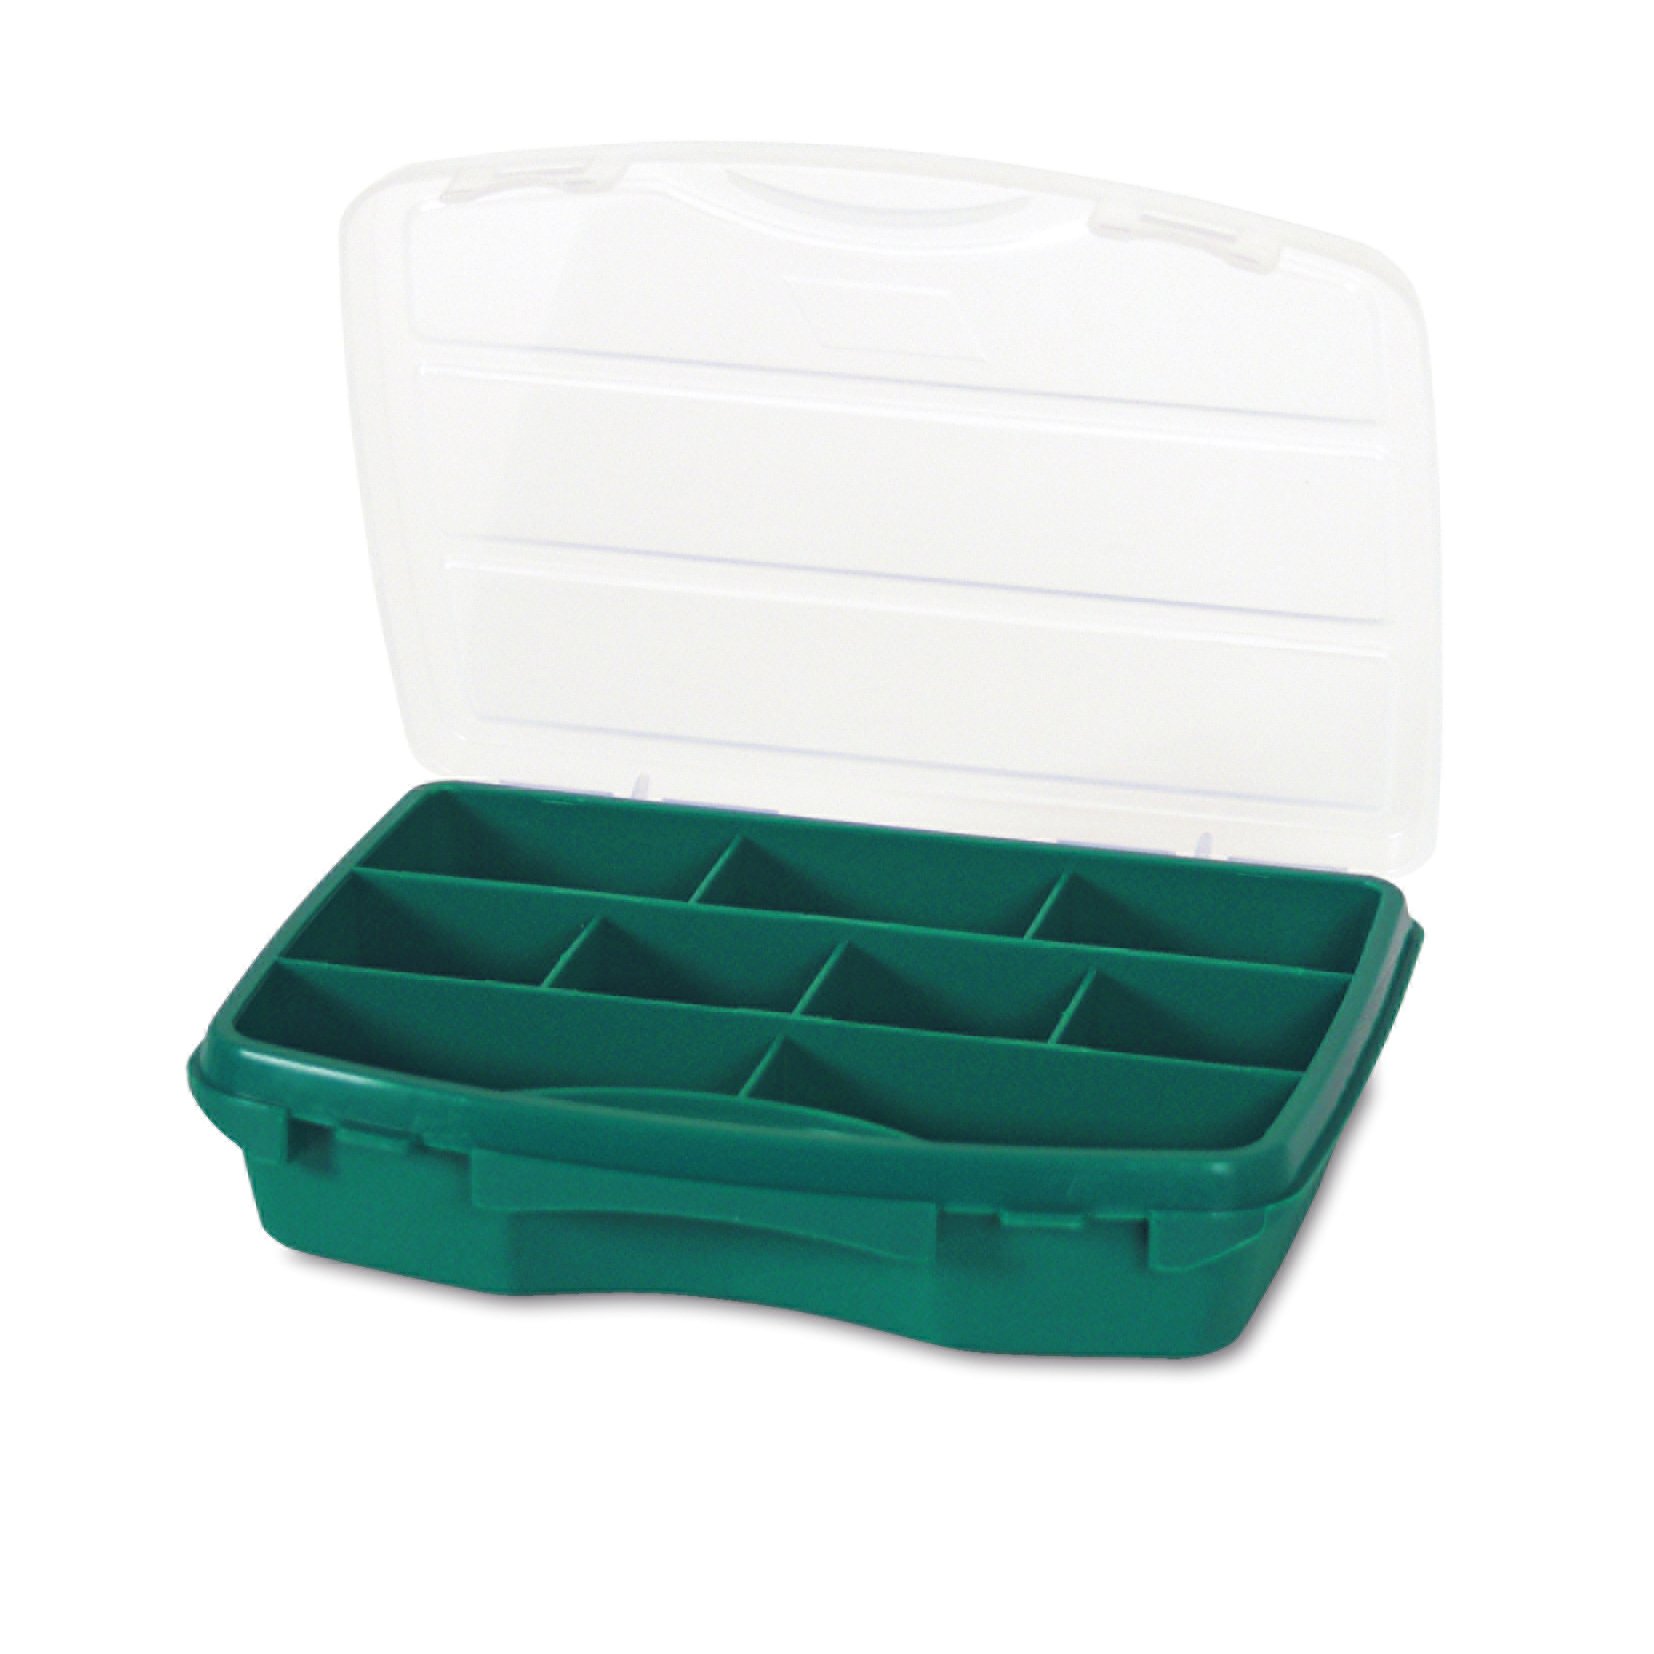 Органайзер Tayg Box 20-9 Estuche, для хранения мелких предметов, 19х15х4,2 см, зеленый (020001) - фото 1